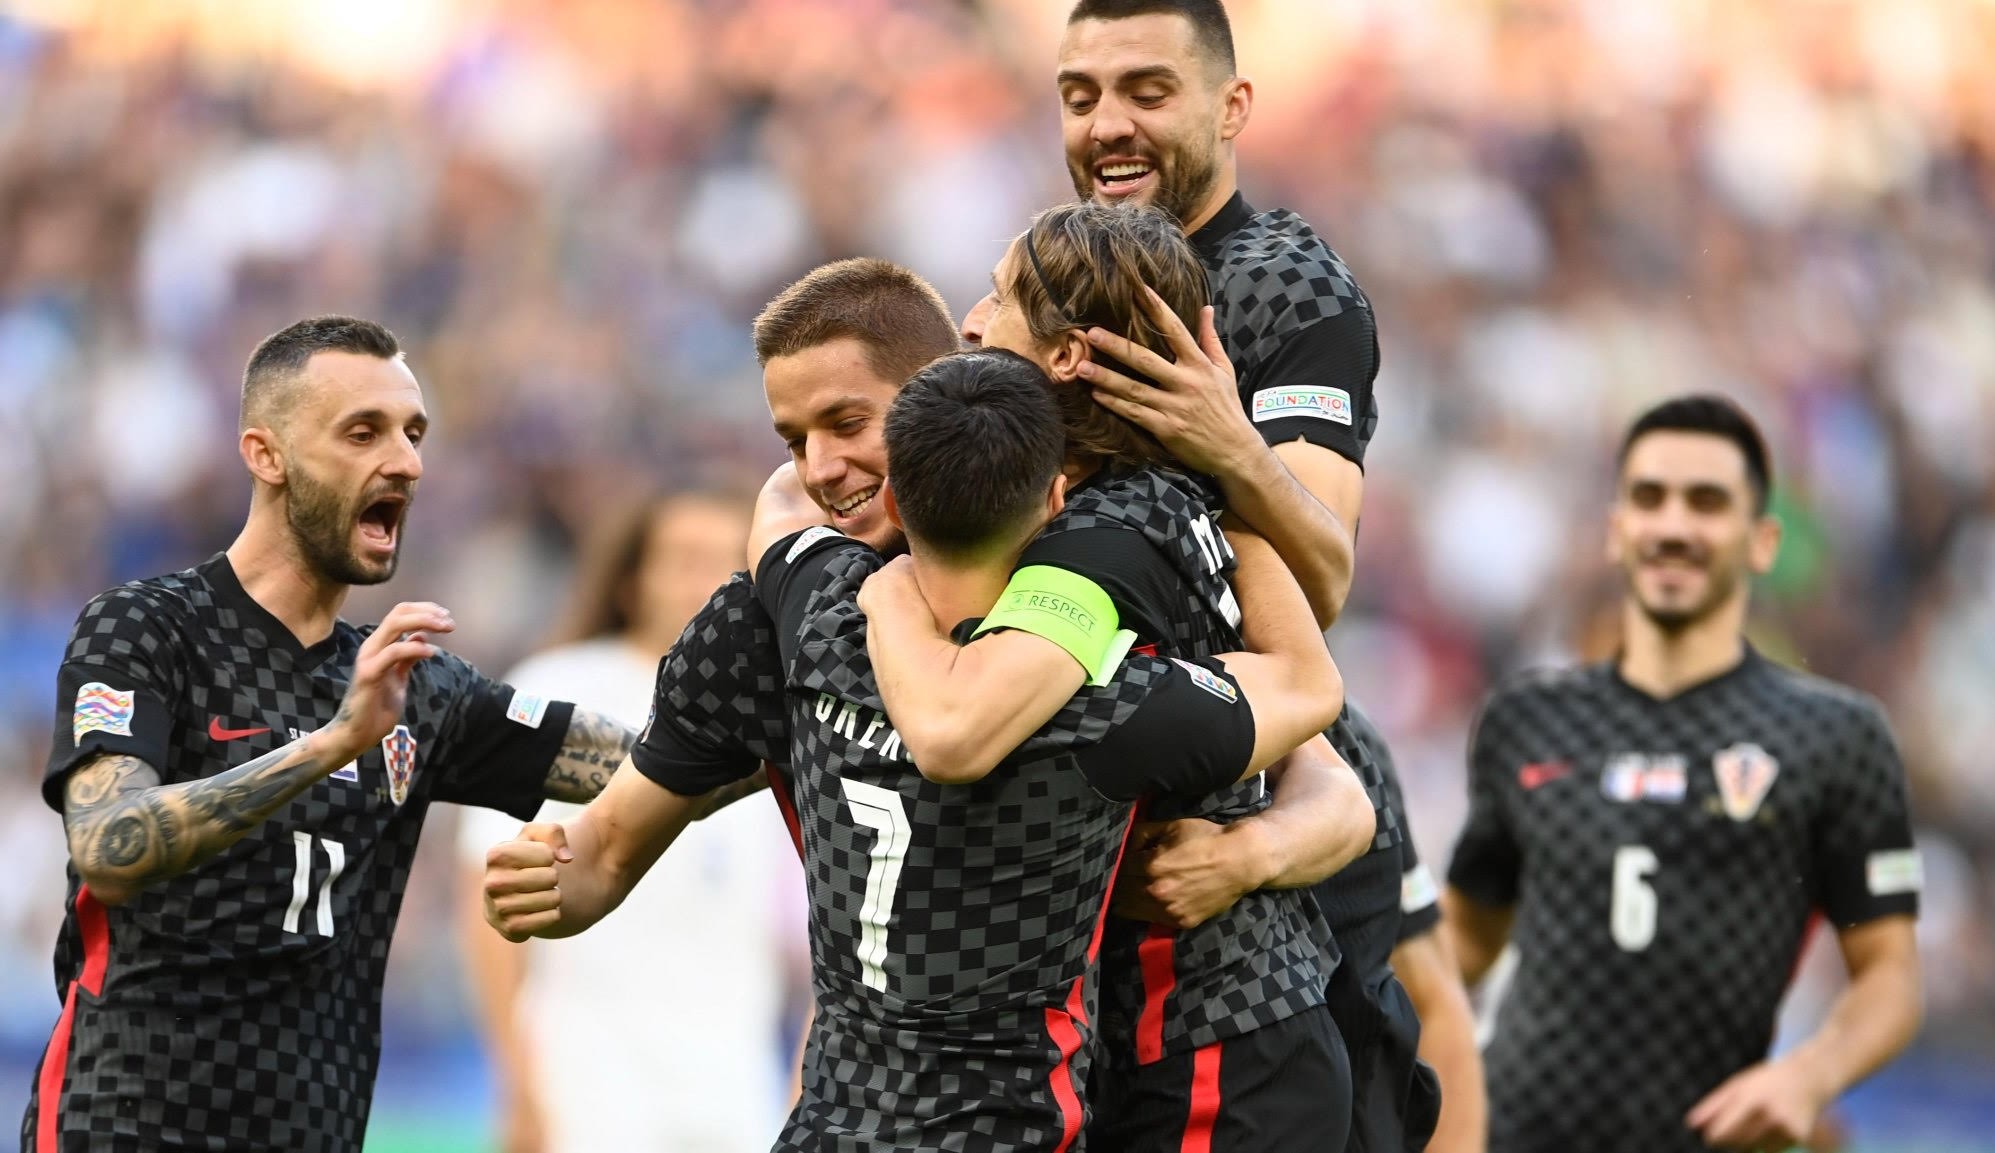 Vitória histórica! Croácia vence a França pela primeira vez e elimina rival da Liga das Nações